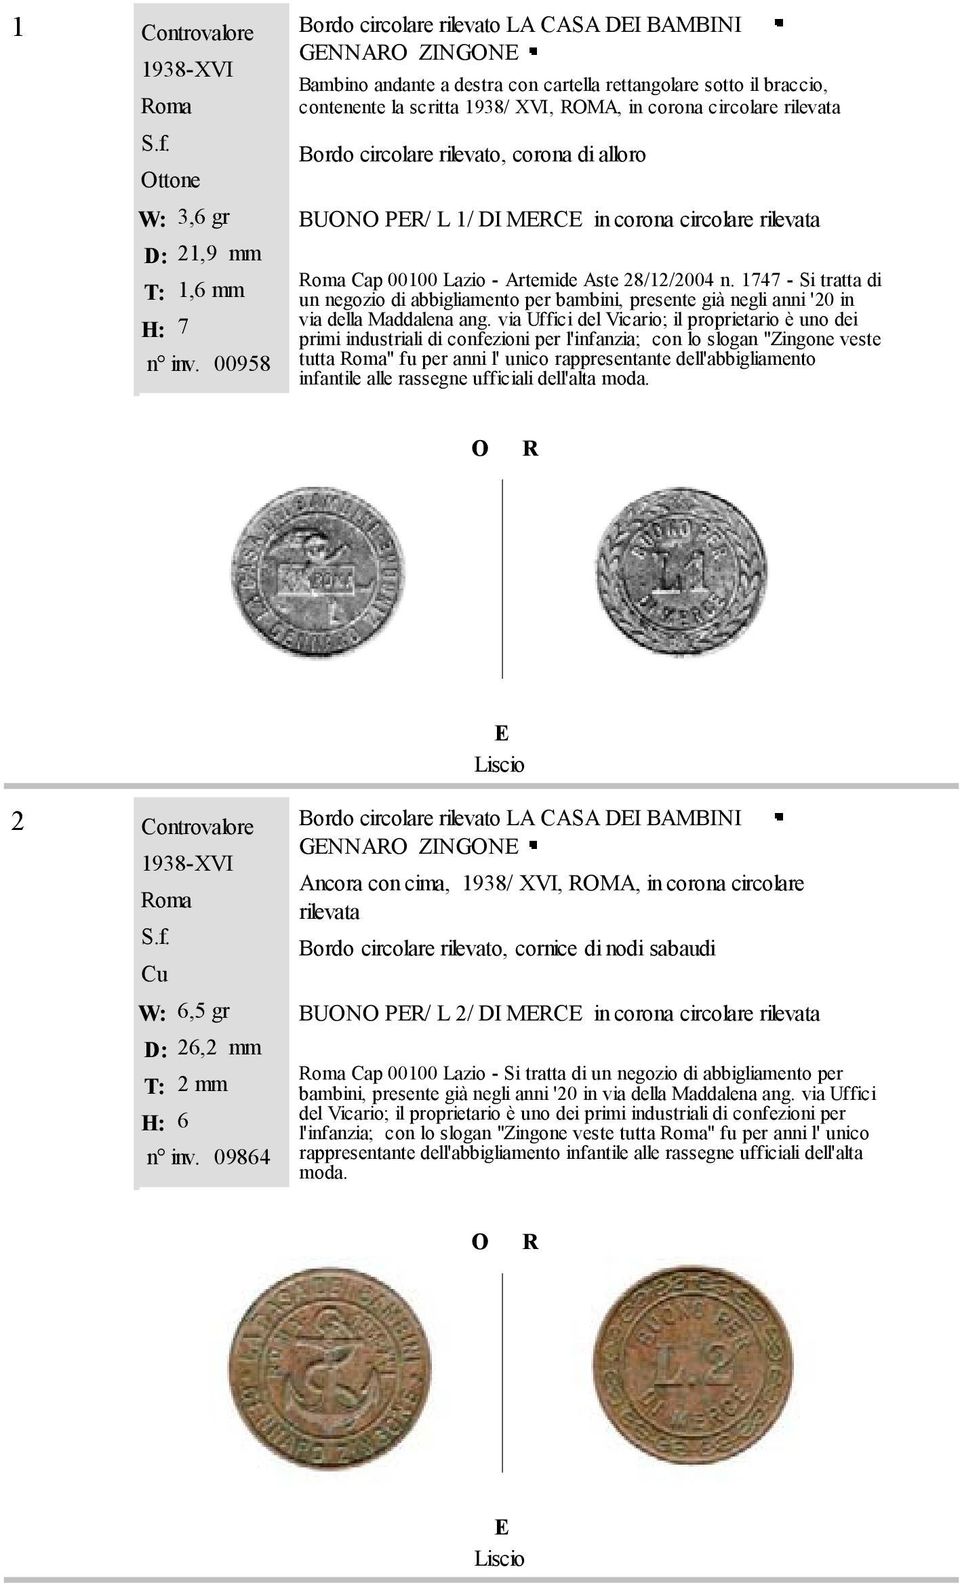 Bordo circolare rilevato, corona di alloro BUN P/ L 1/ DI MC in corona circolare rilevata oma Cap 00100 Lazio - Artemide Aste 28/12/2004 n.